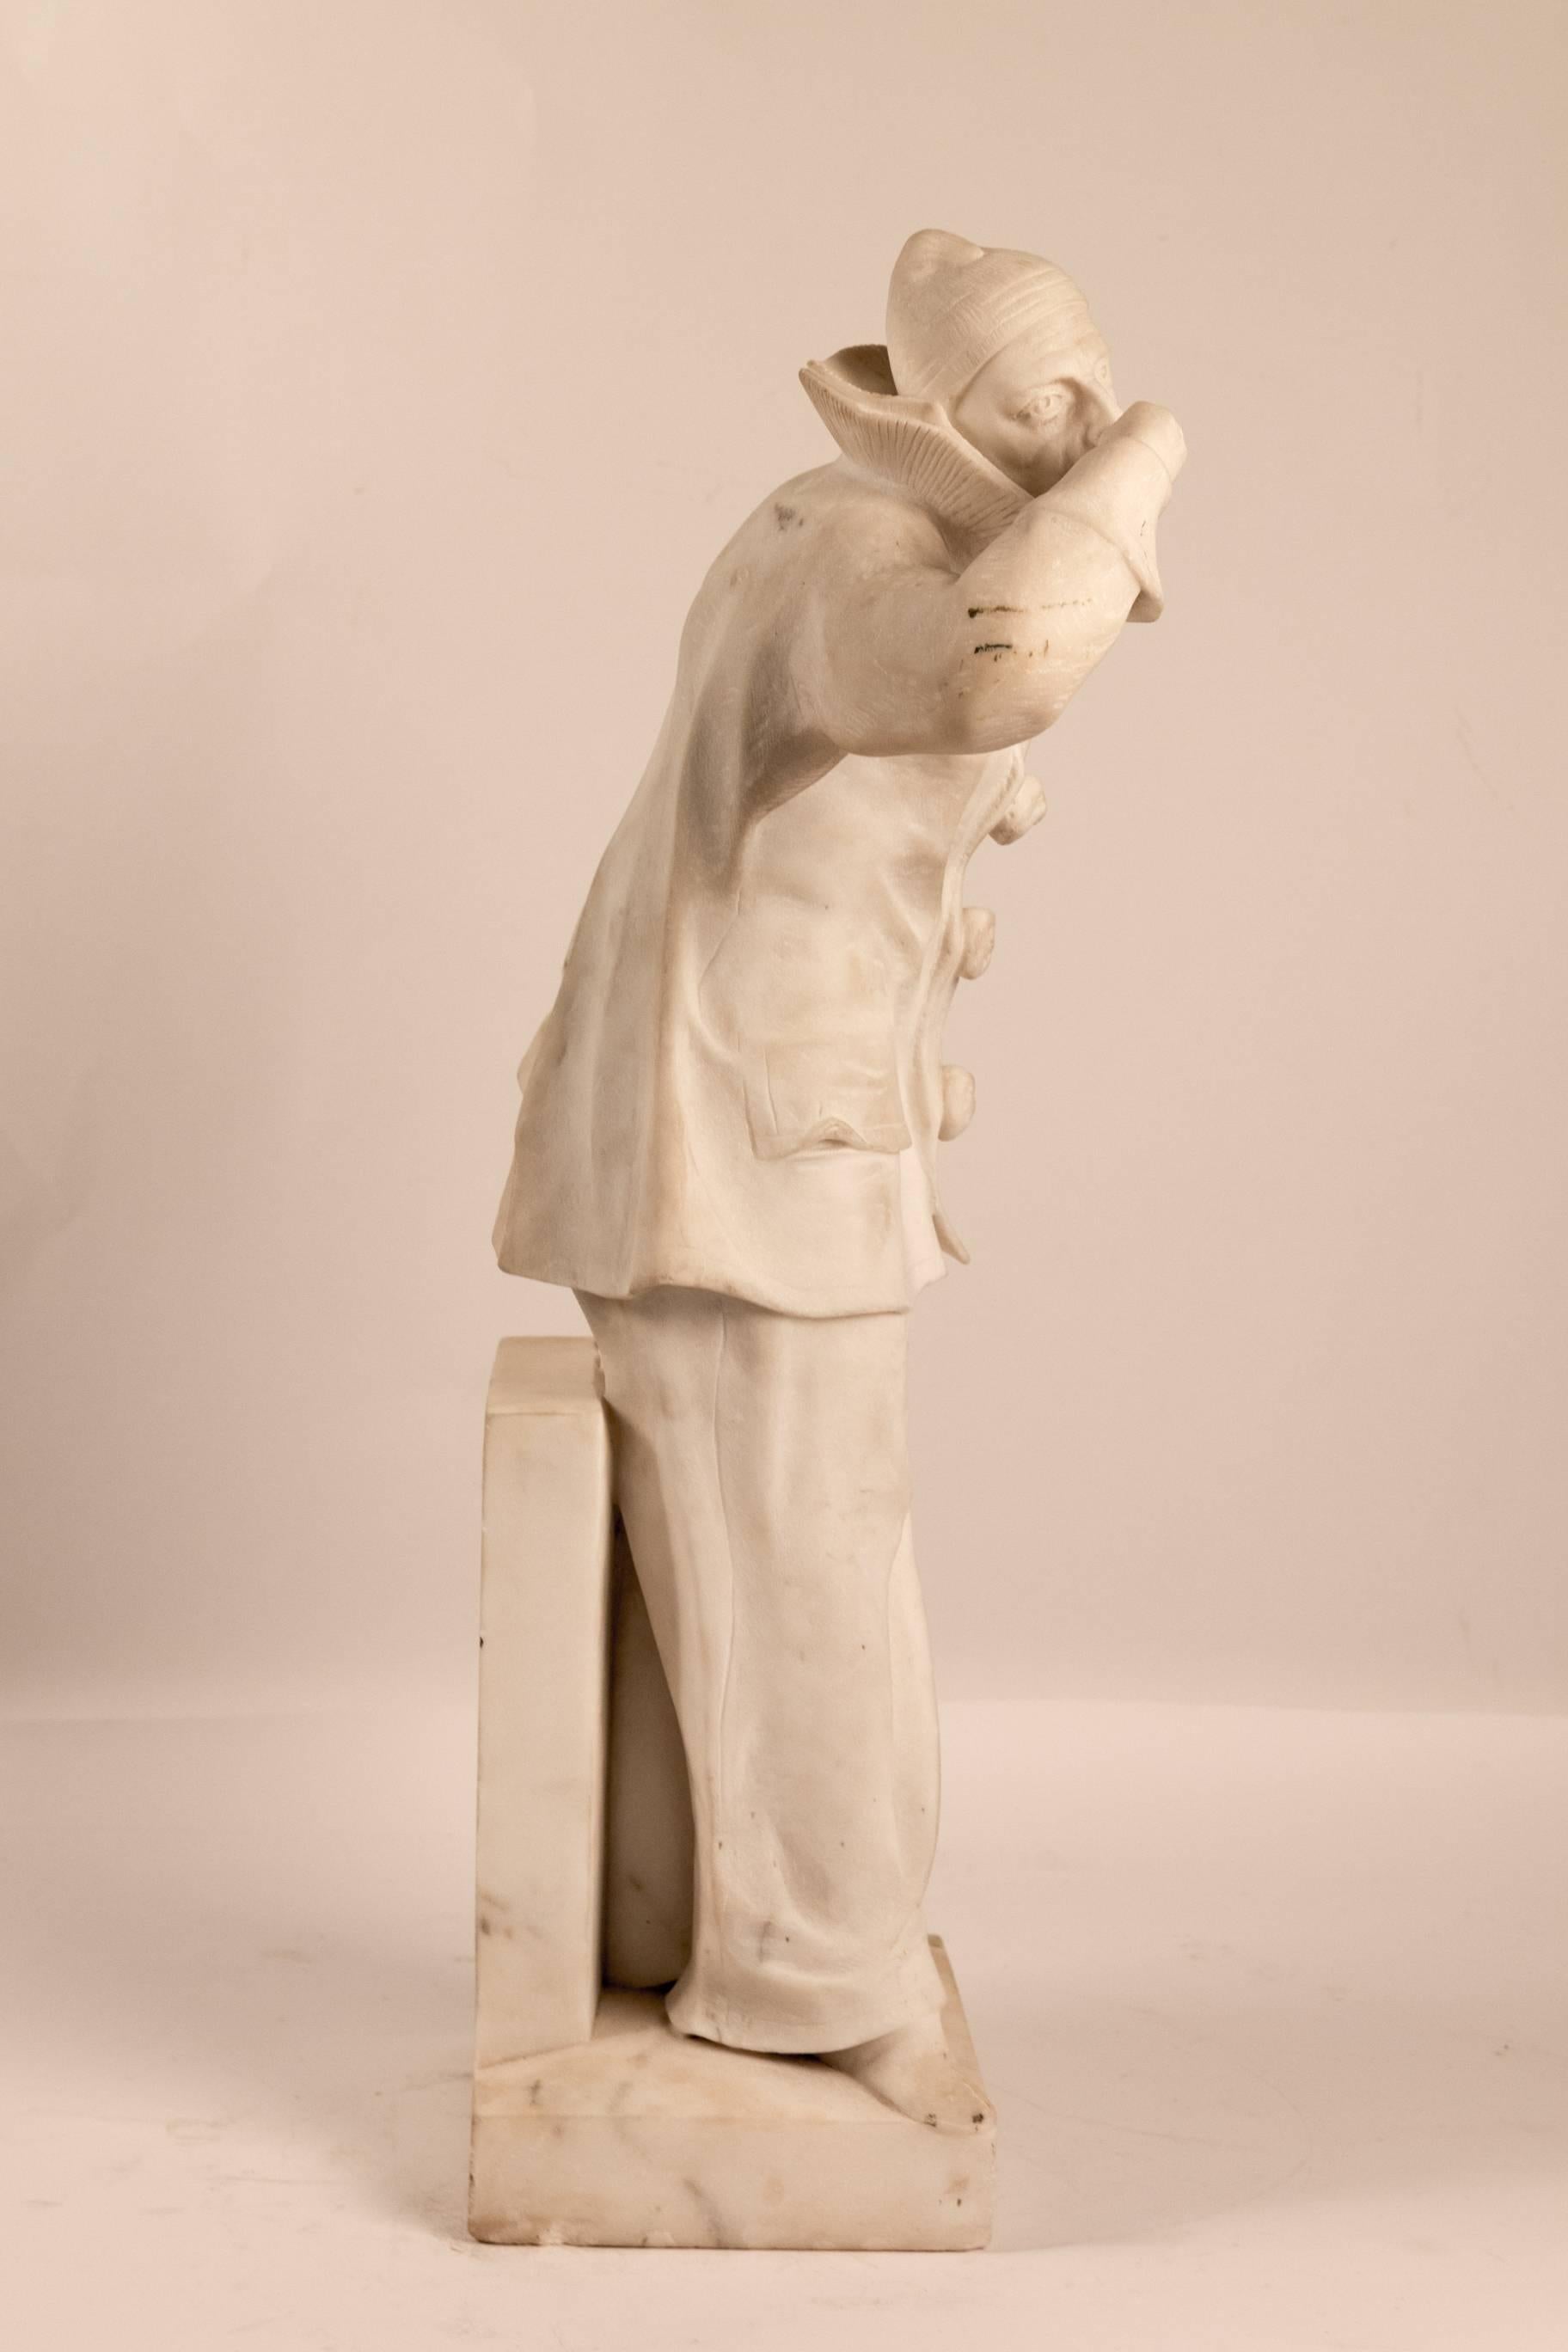 20th Century Belgium Marble Pierrot Sculpture by John Mayne Van Der Kemp, circa 1910-1920